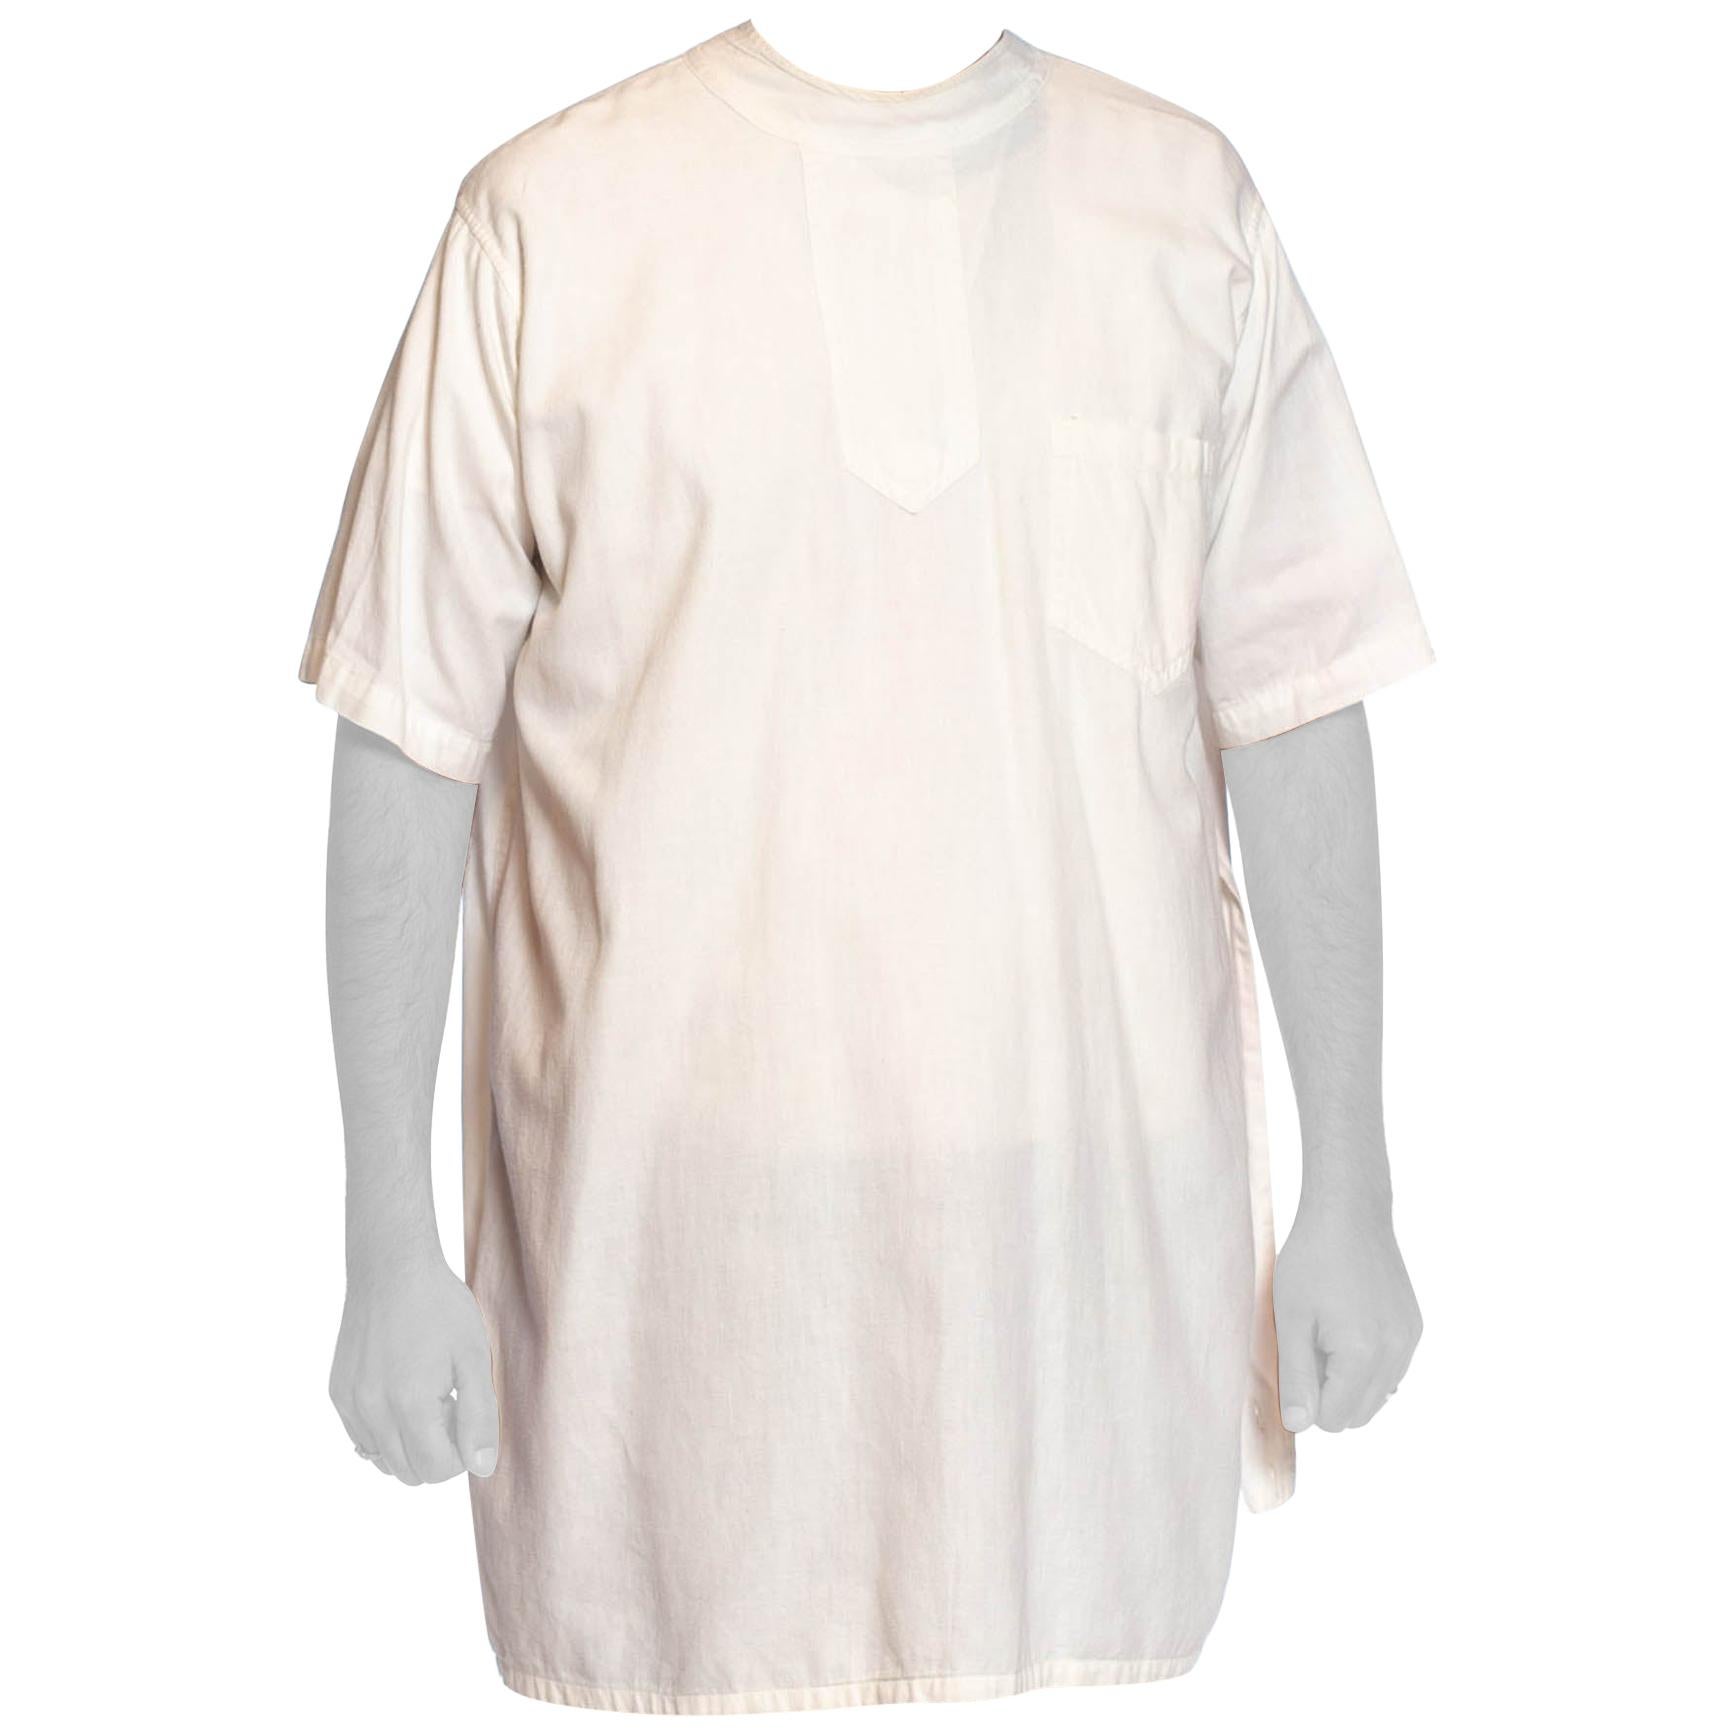 Antikes edwardianisches Herrenhemd aus weißer Baumwolle, 1920er Jahre